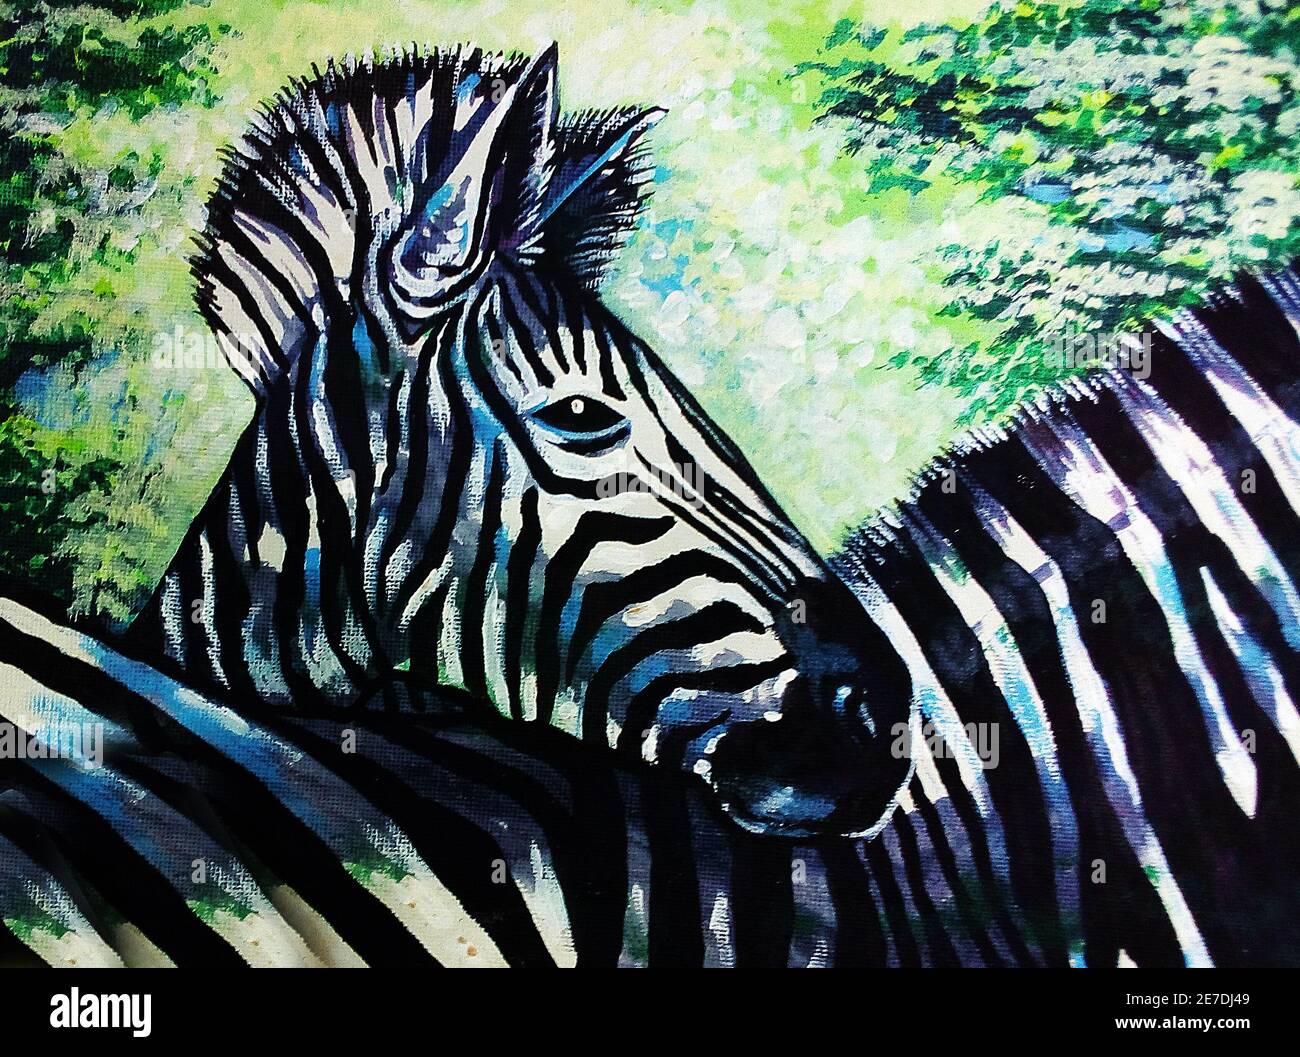 Kunst, Malerei, Bildende Kunst, Öl, Farbe, Laufen, Zebra Pferd, Glück, aus Thailand Stockfoto